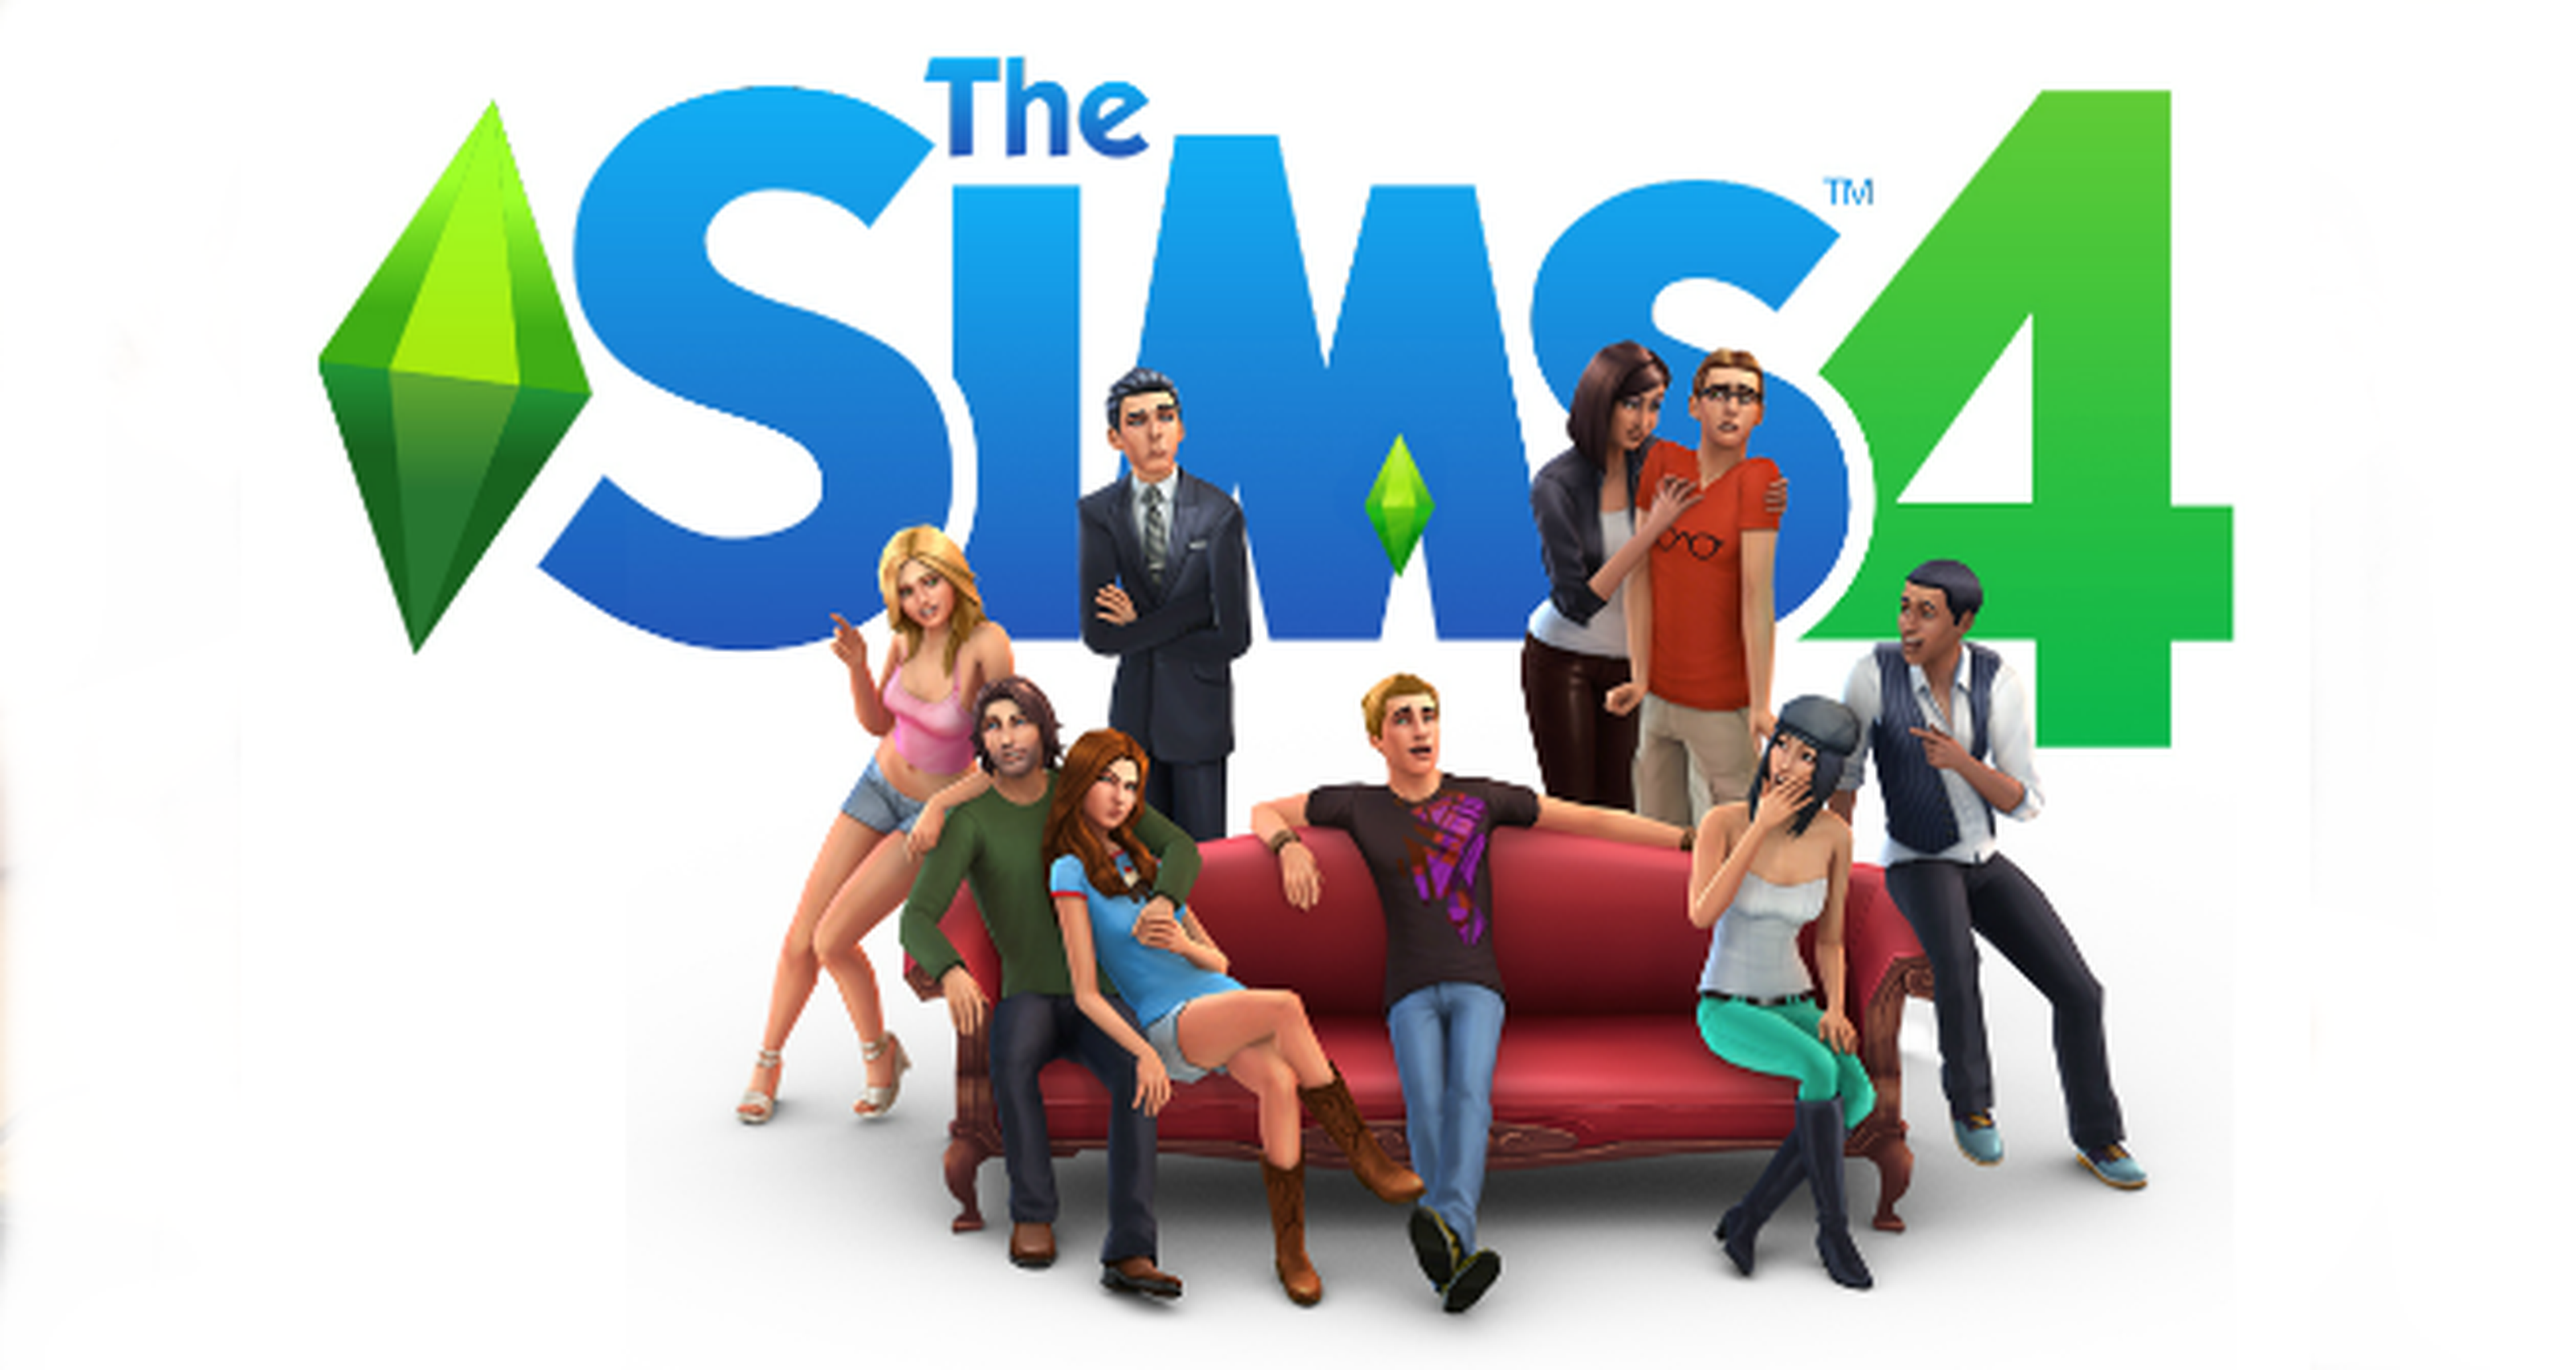 Análisis de Los Sims 4